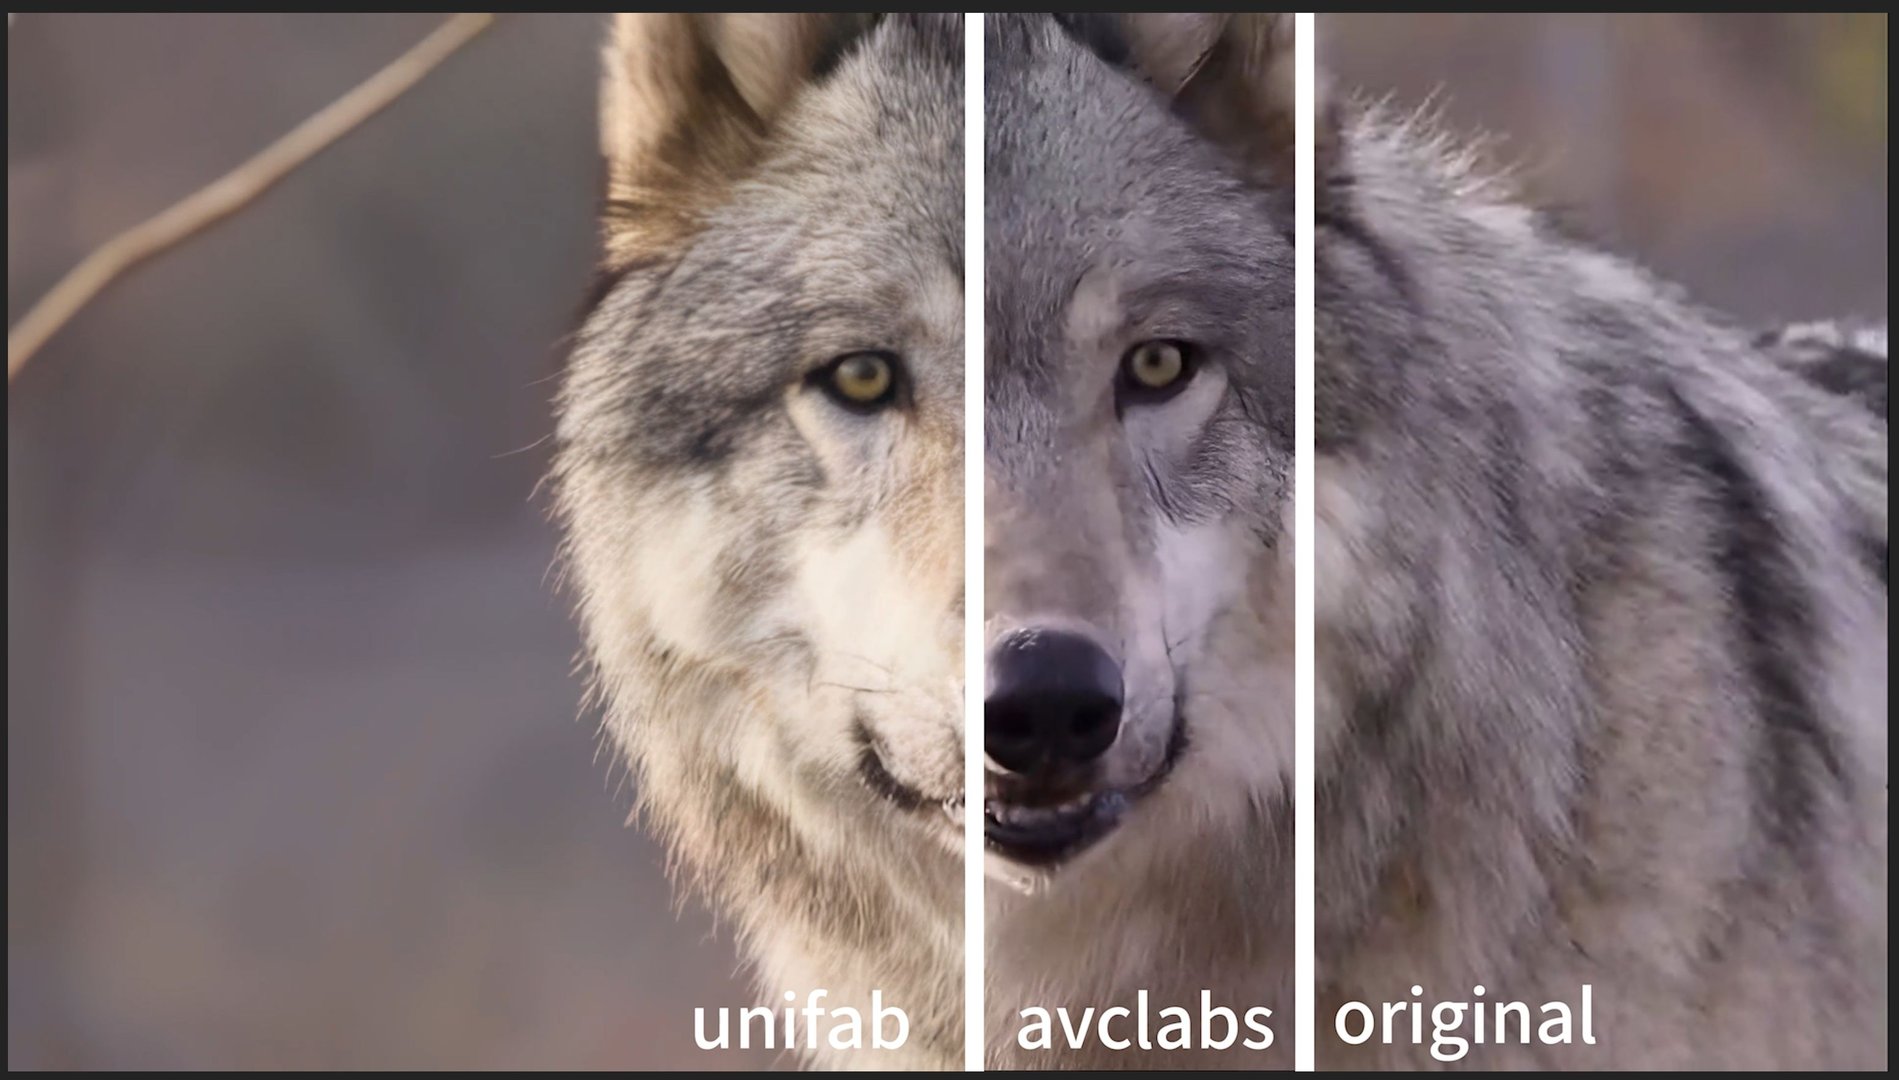 unifab vs avclabs 1.jpg